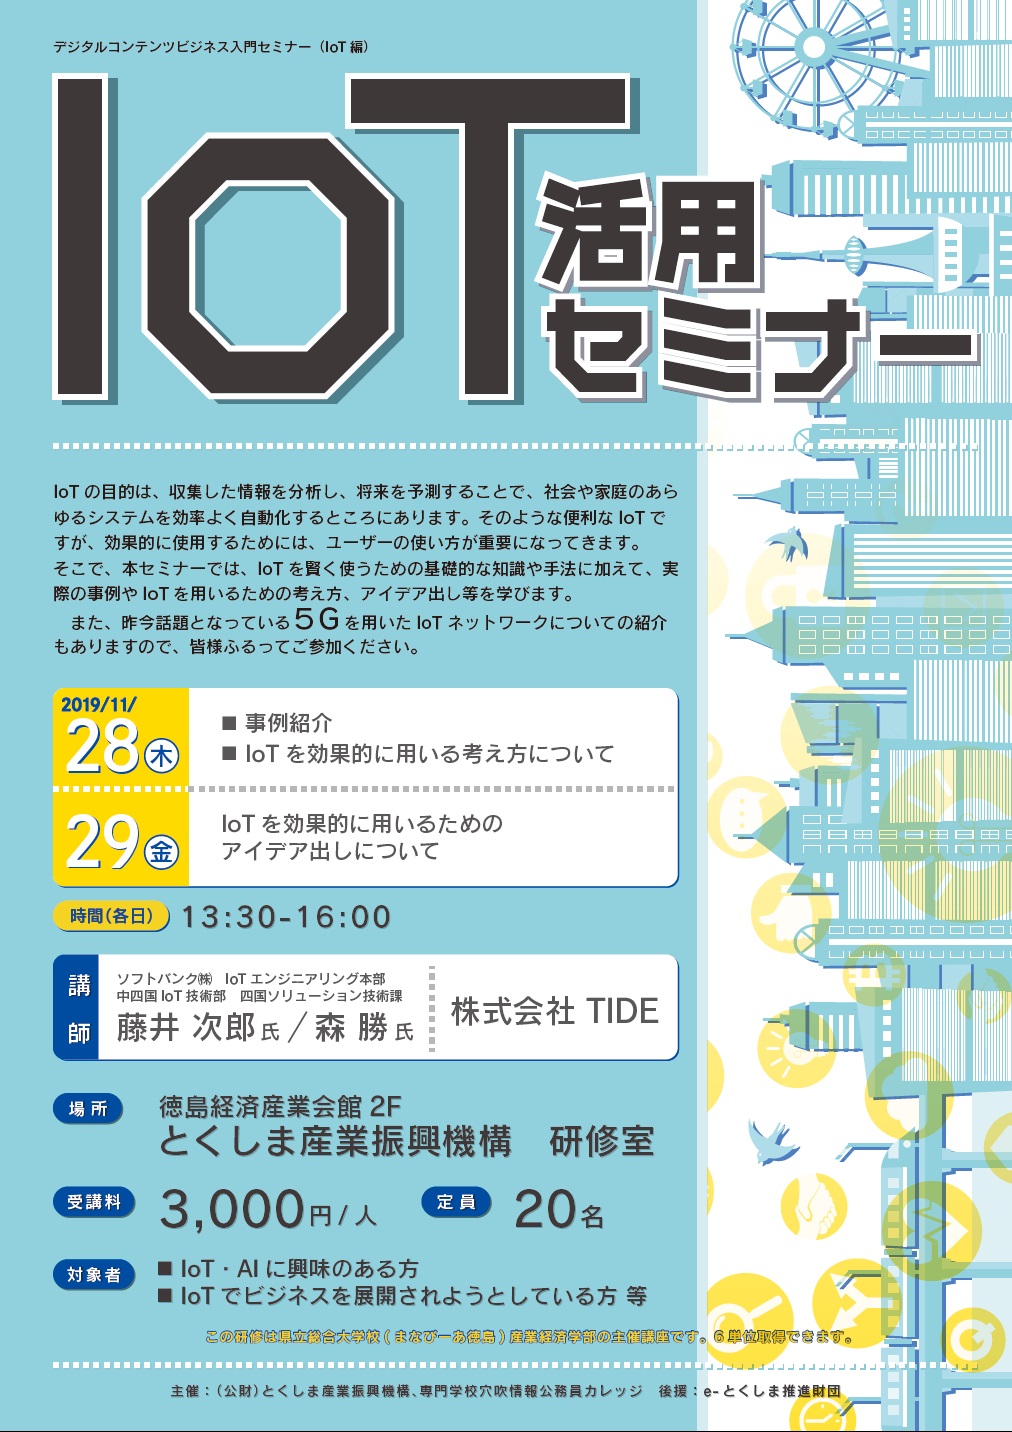 デジタルコンテンツビジネス入門セミナー（IoT編）